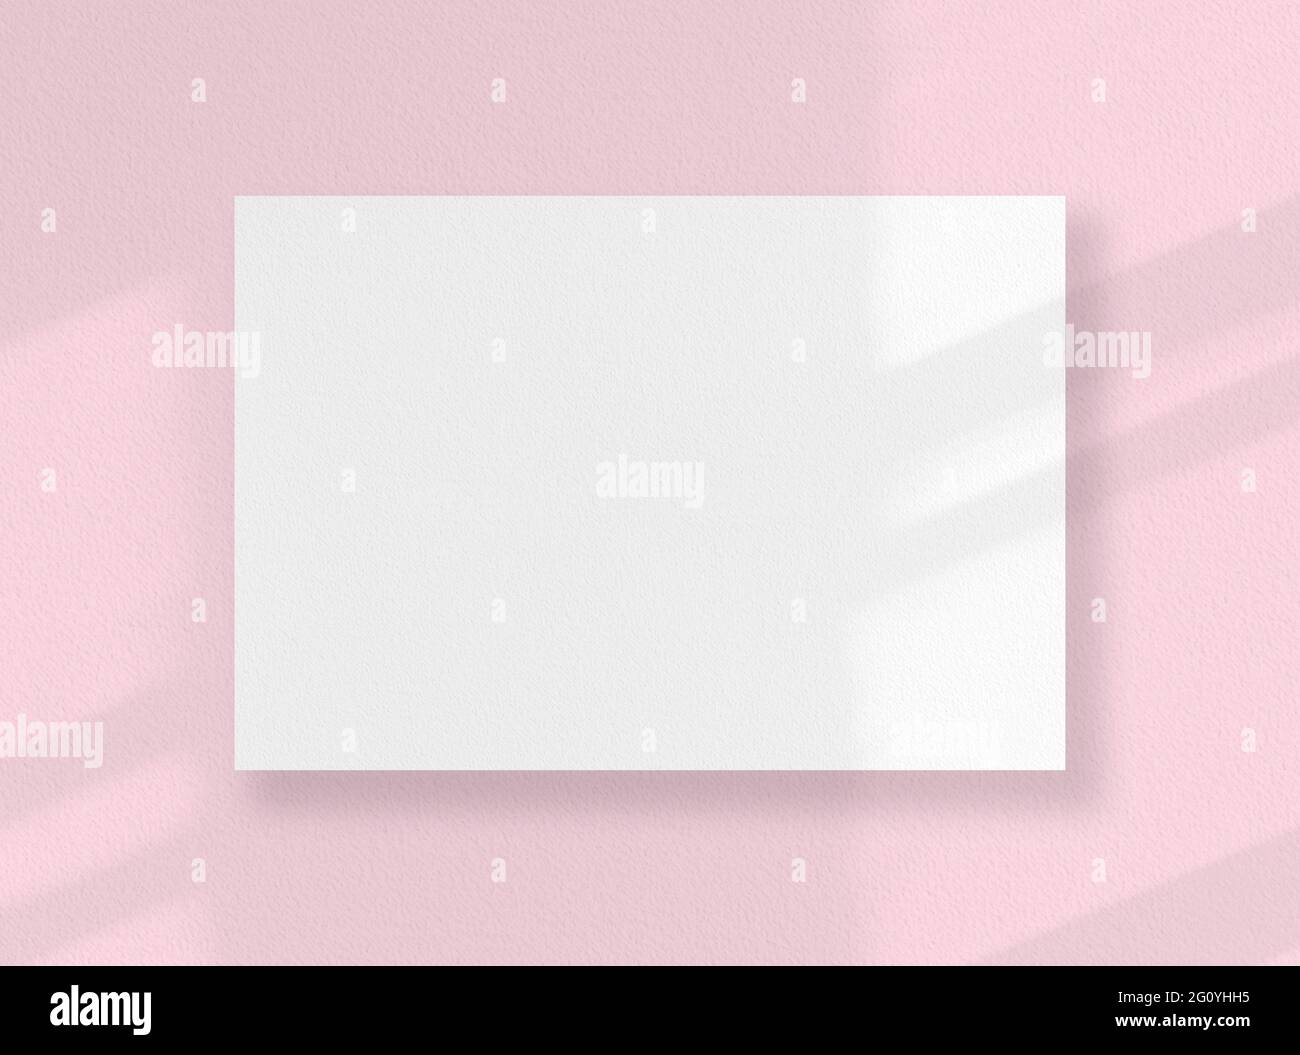 Cartoncino quadrato vuoto, foglio bianco come mockup con ombre assolate sulla superficie rosa Foto Stock